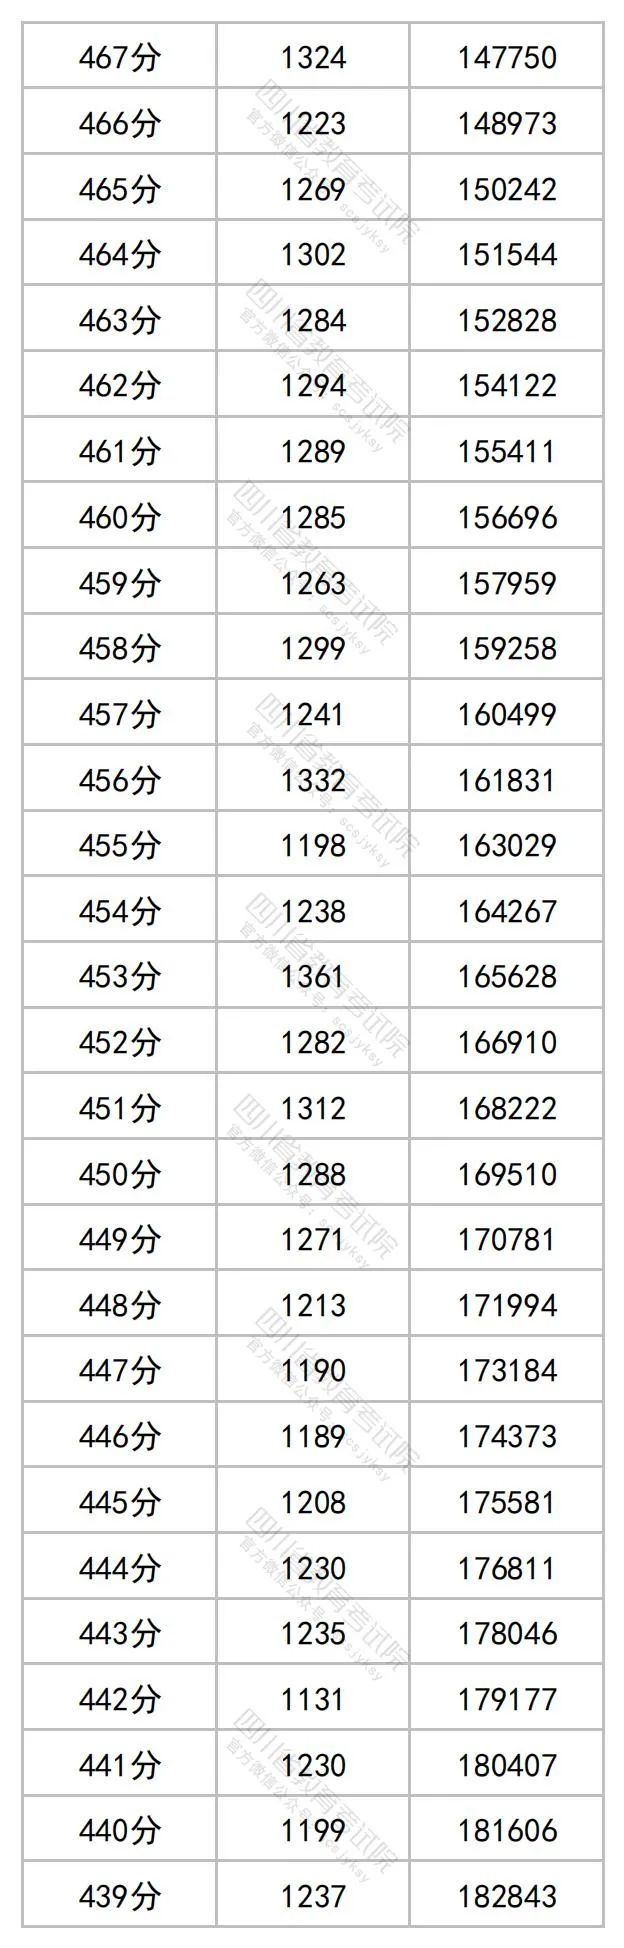 2023四川高考理科一分一段表公布 最新高考成绩排名9.jpg